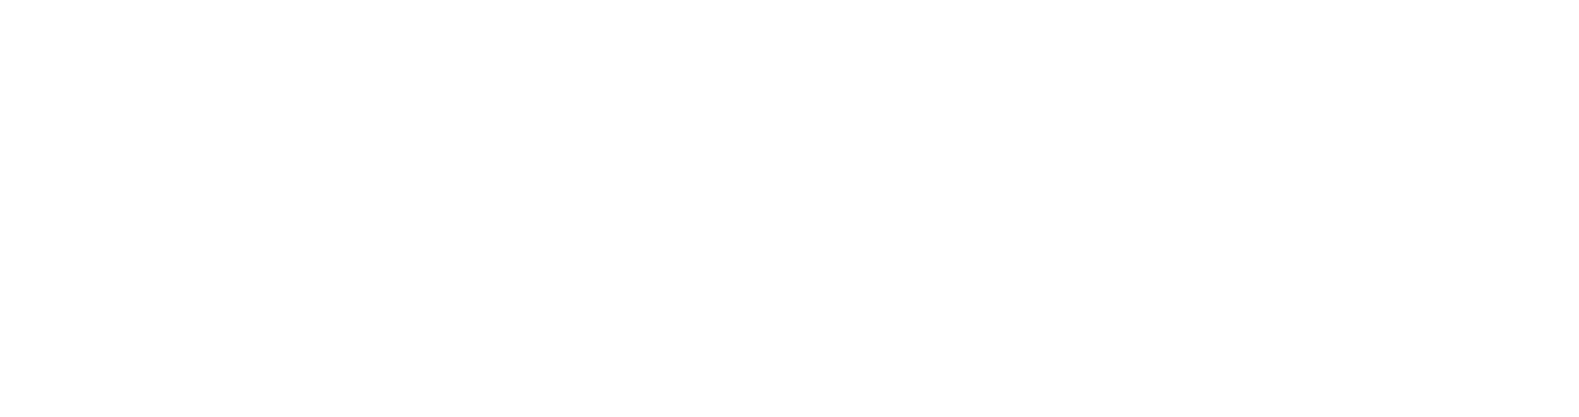 EnPro Industries
 logo large for dark backgrounds (transparent PNG)